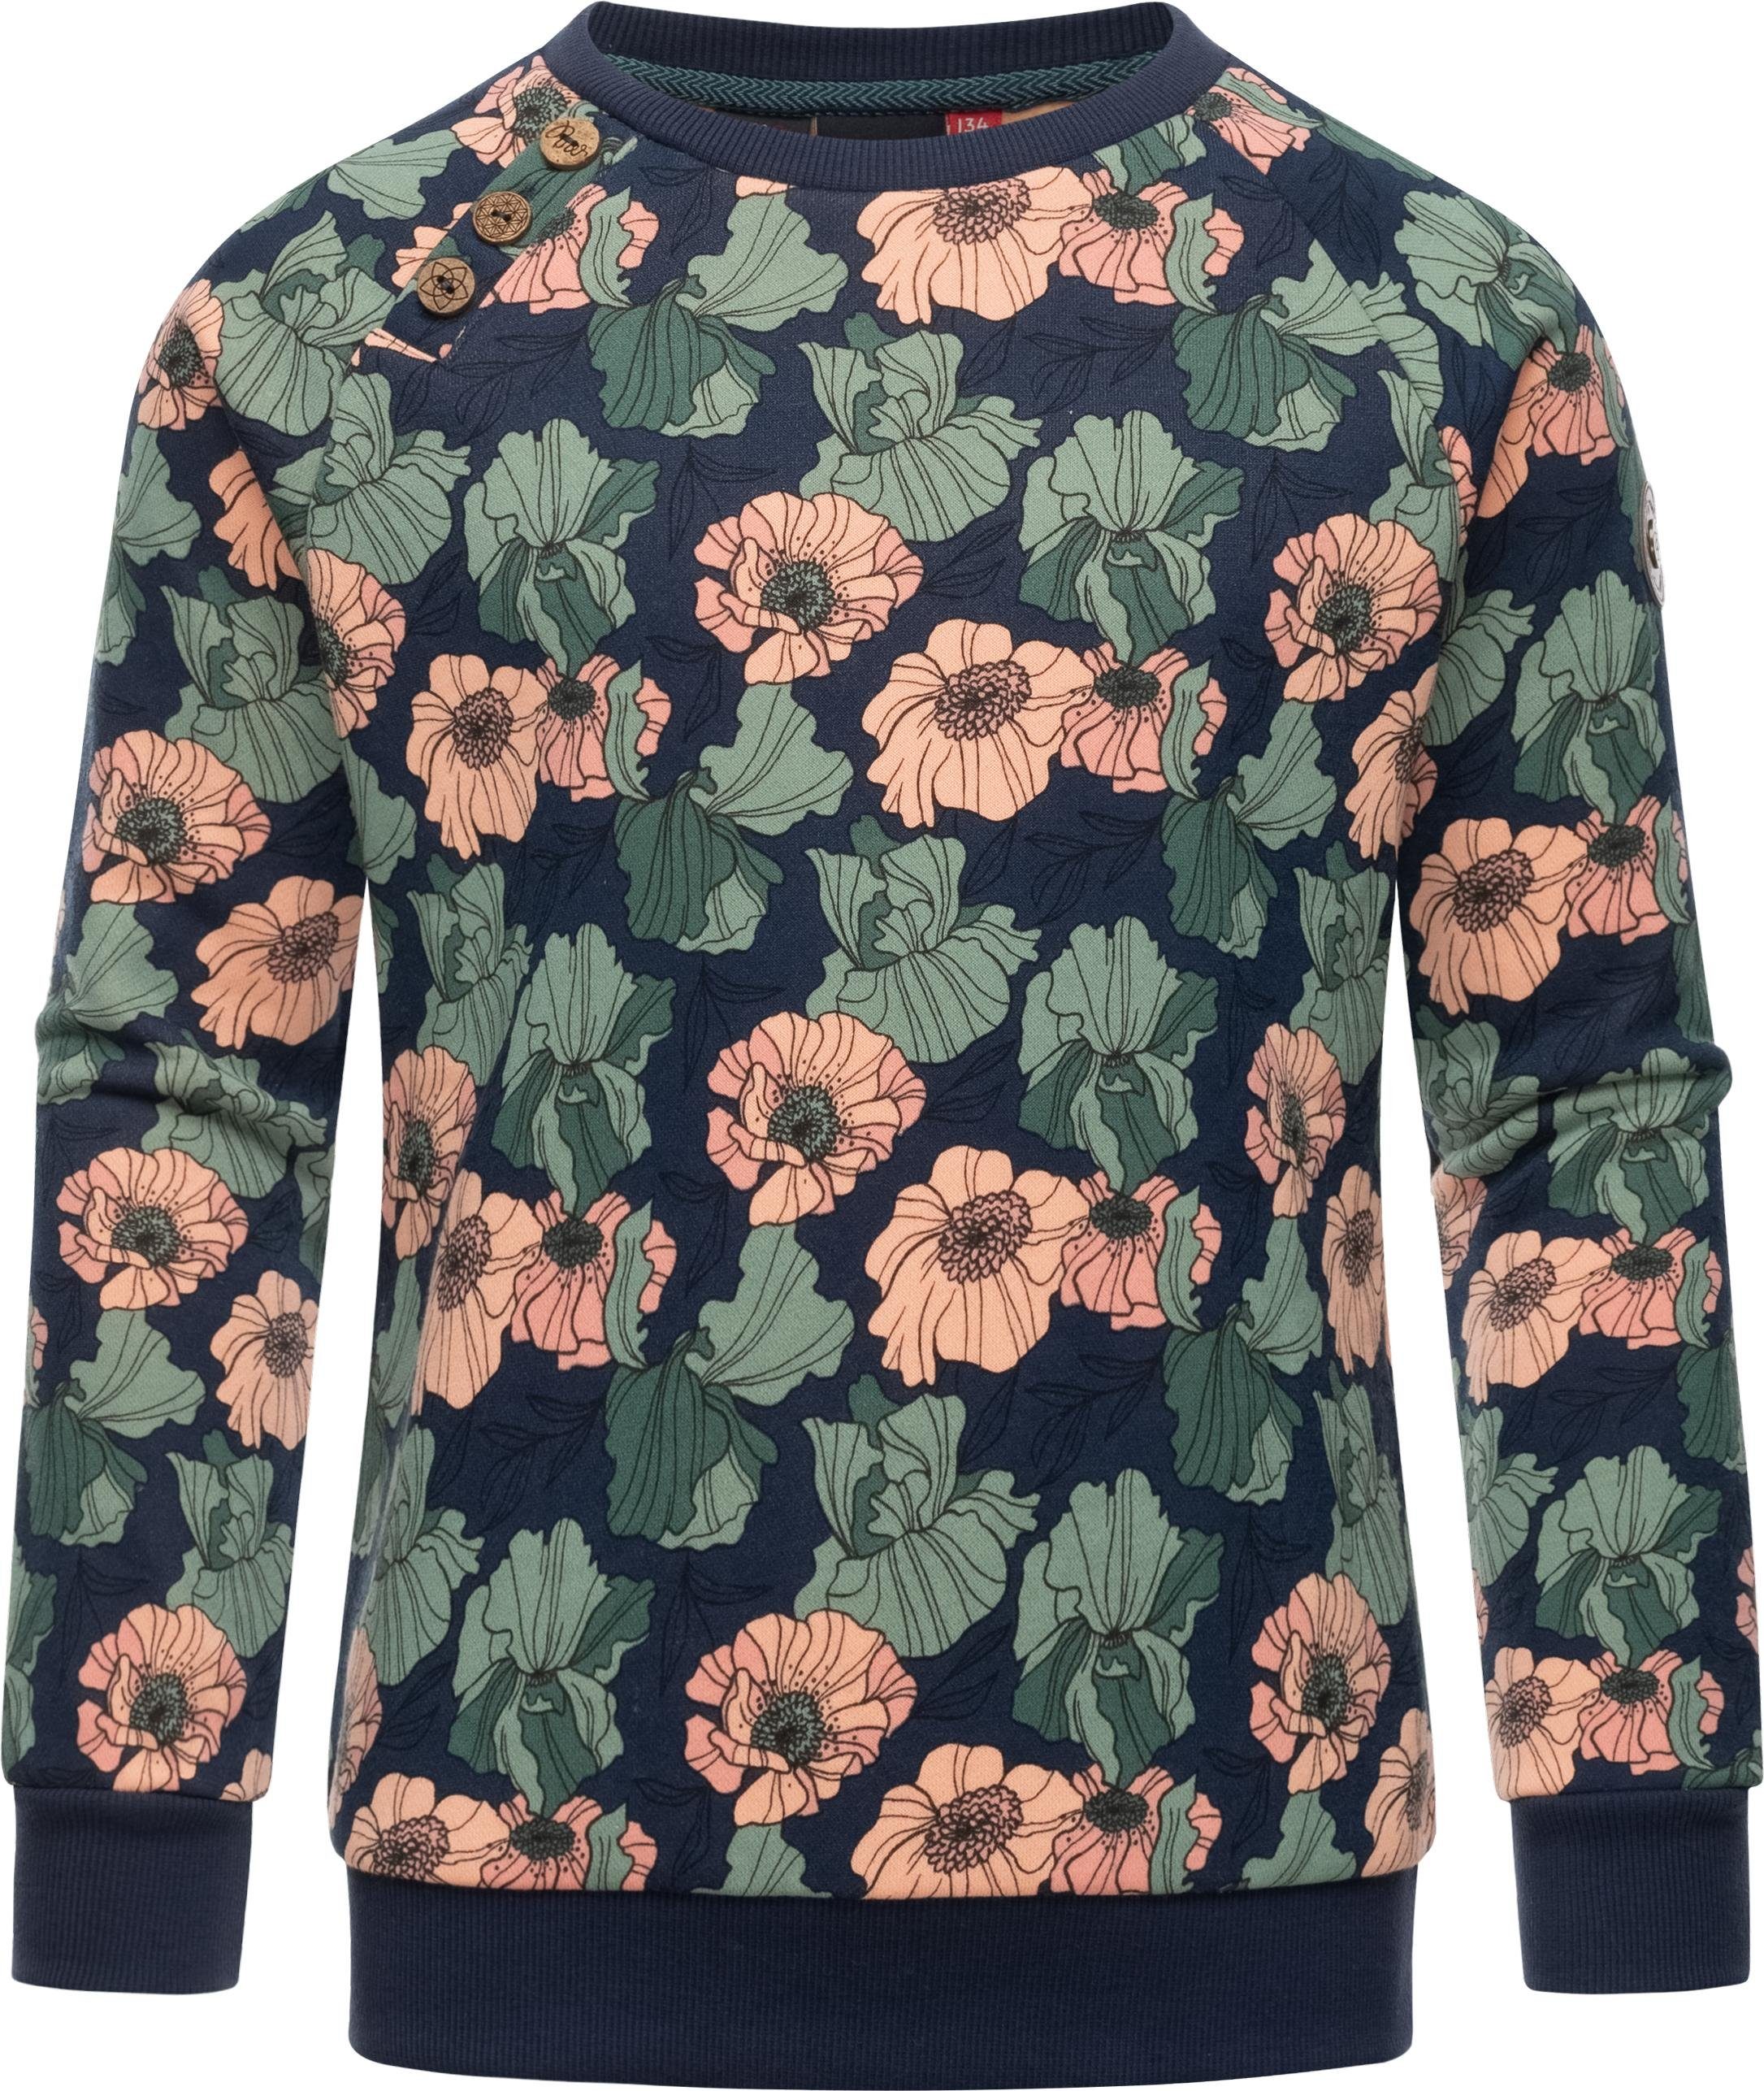 Sie können es sofort finden! Ragwear Sweater Sweatshirt mit Freesia navy Darinka Mädchen Blumenmuster stylisches